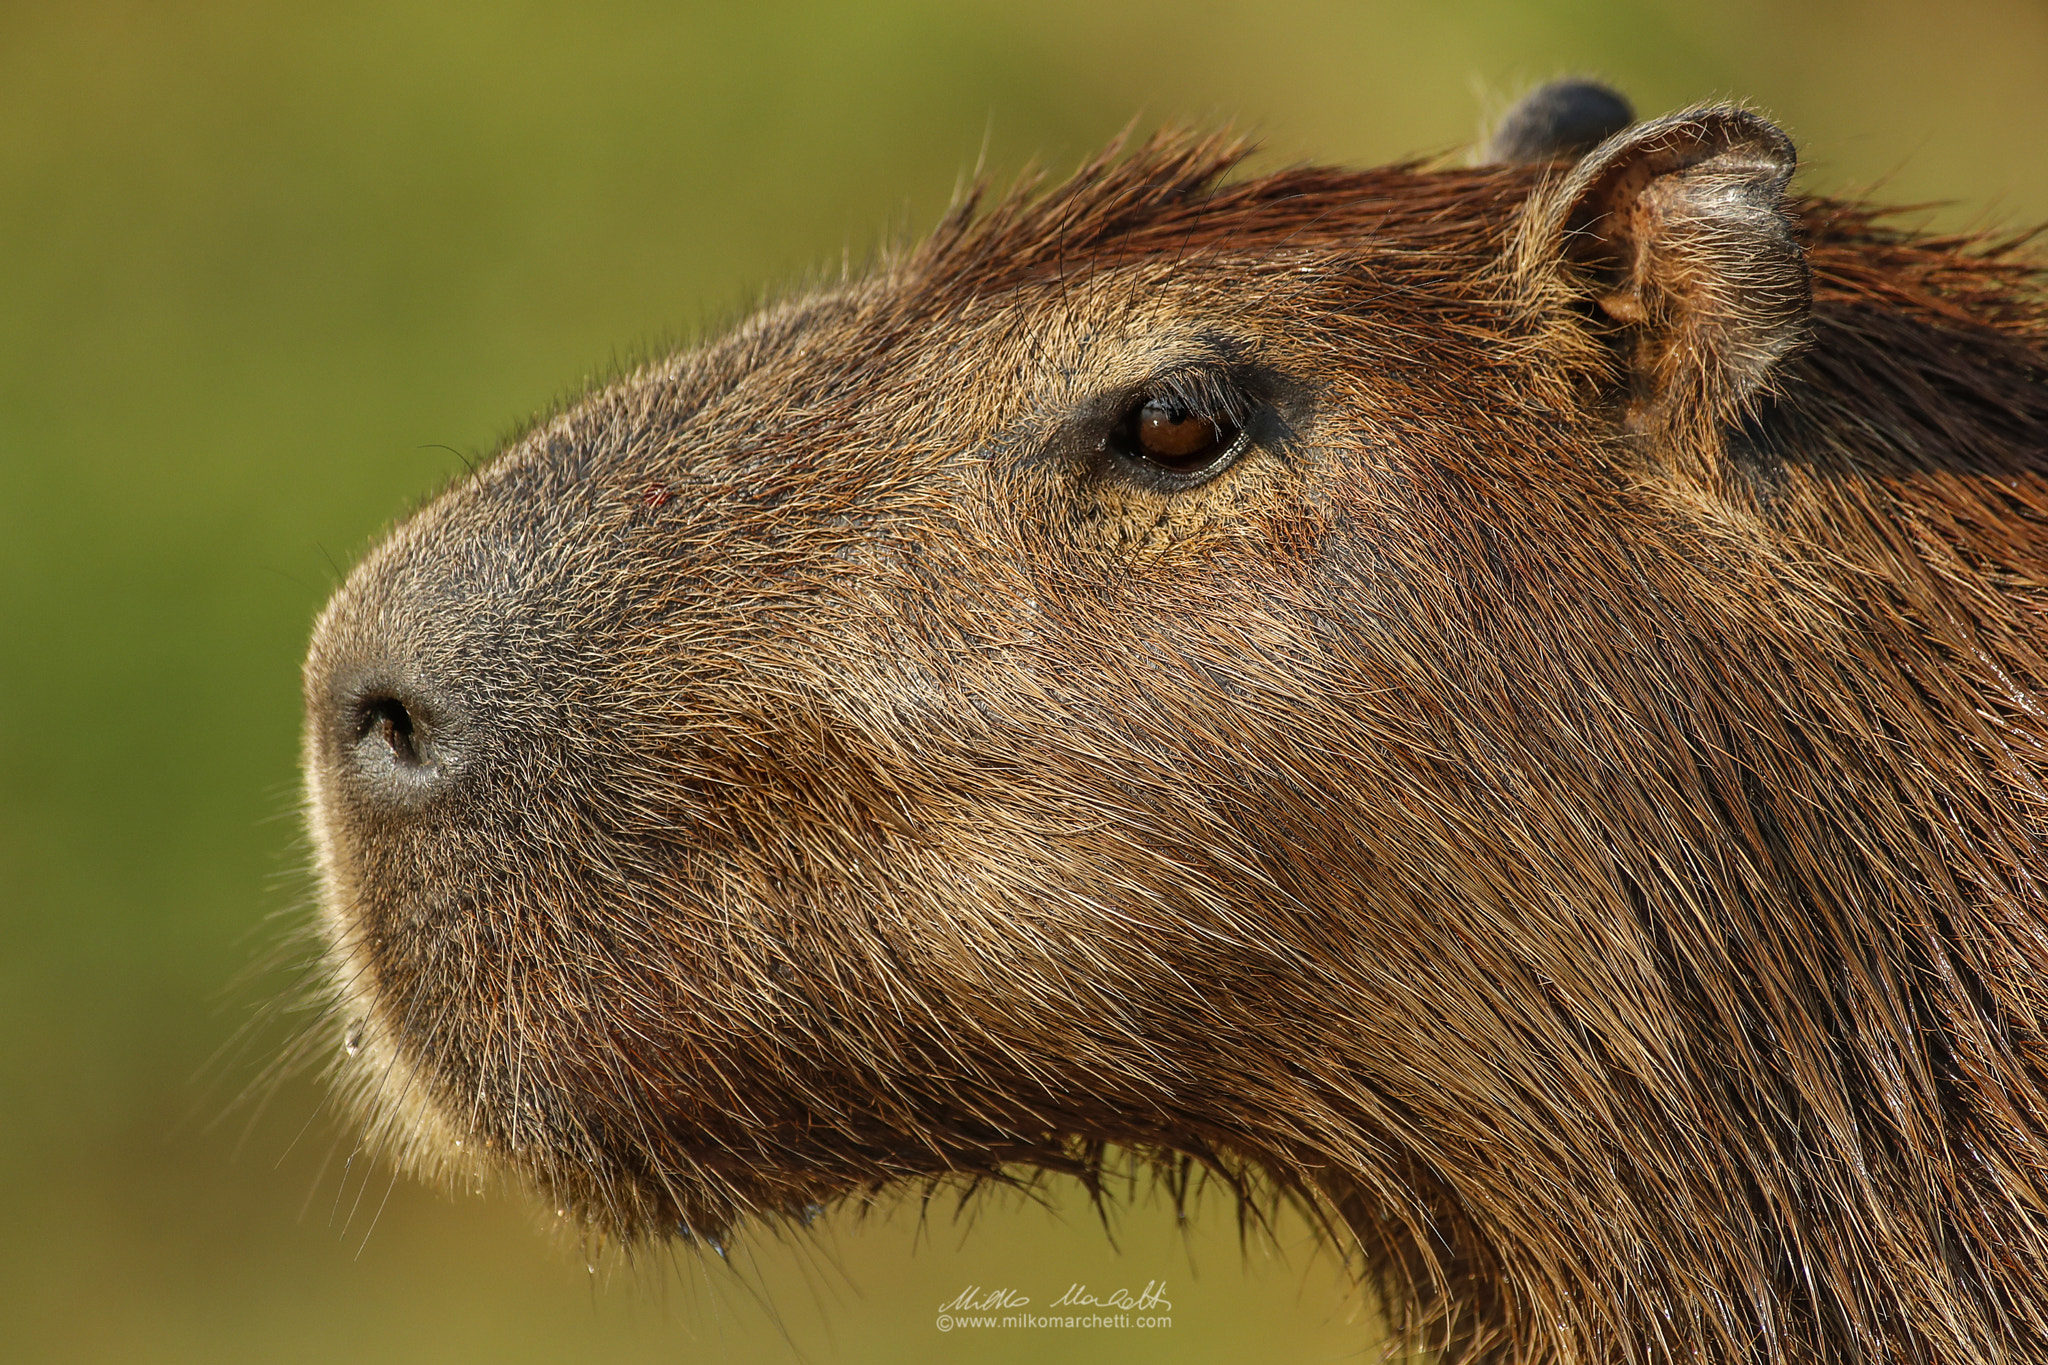 Canon EOS-1D X Mark II + Canon EF 300mm f/2.8L + 1.4x sample photo. Capybara photography